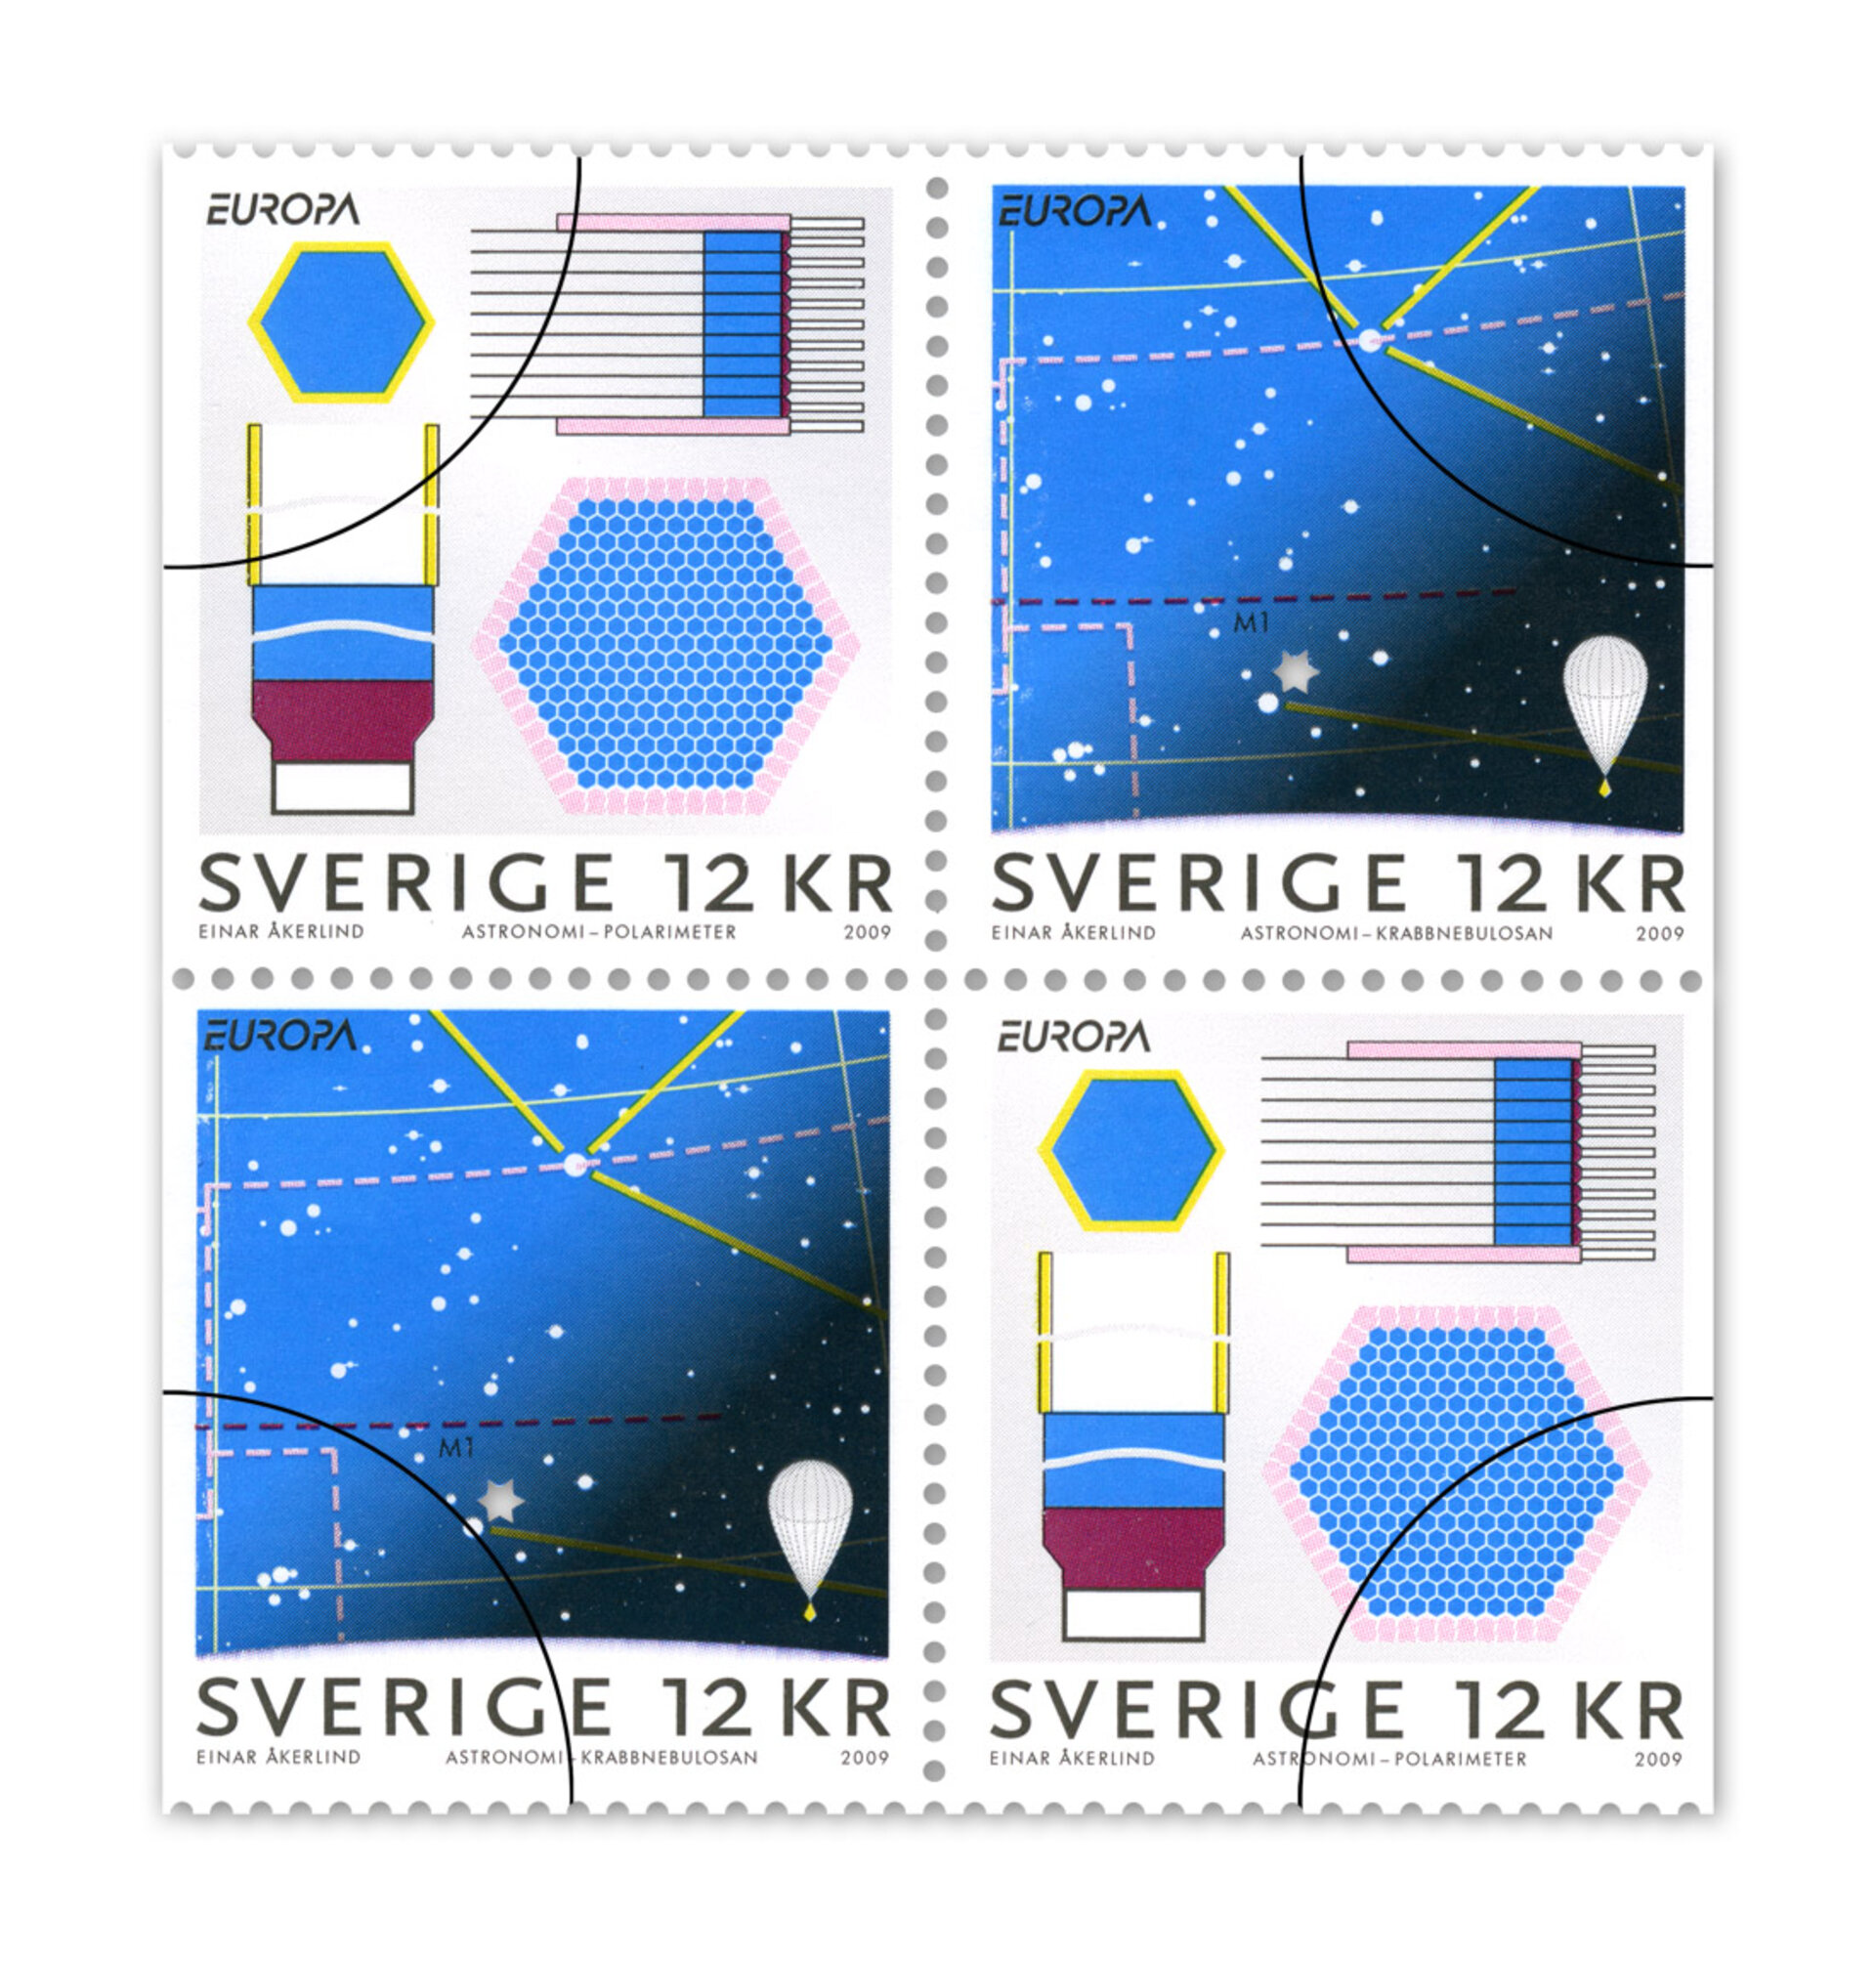 Frimärkena har formgivits av Einar Åkerlind. Tryckning har skett i offset och frimärkena förpackas i häfte med 4 frimärken och 2